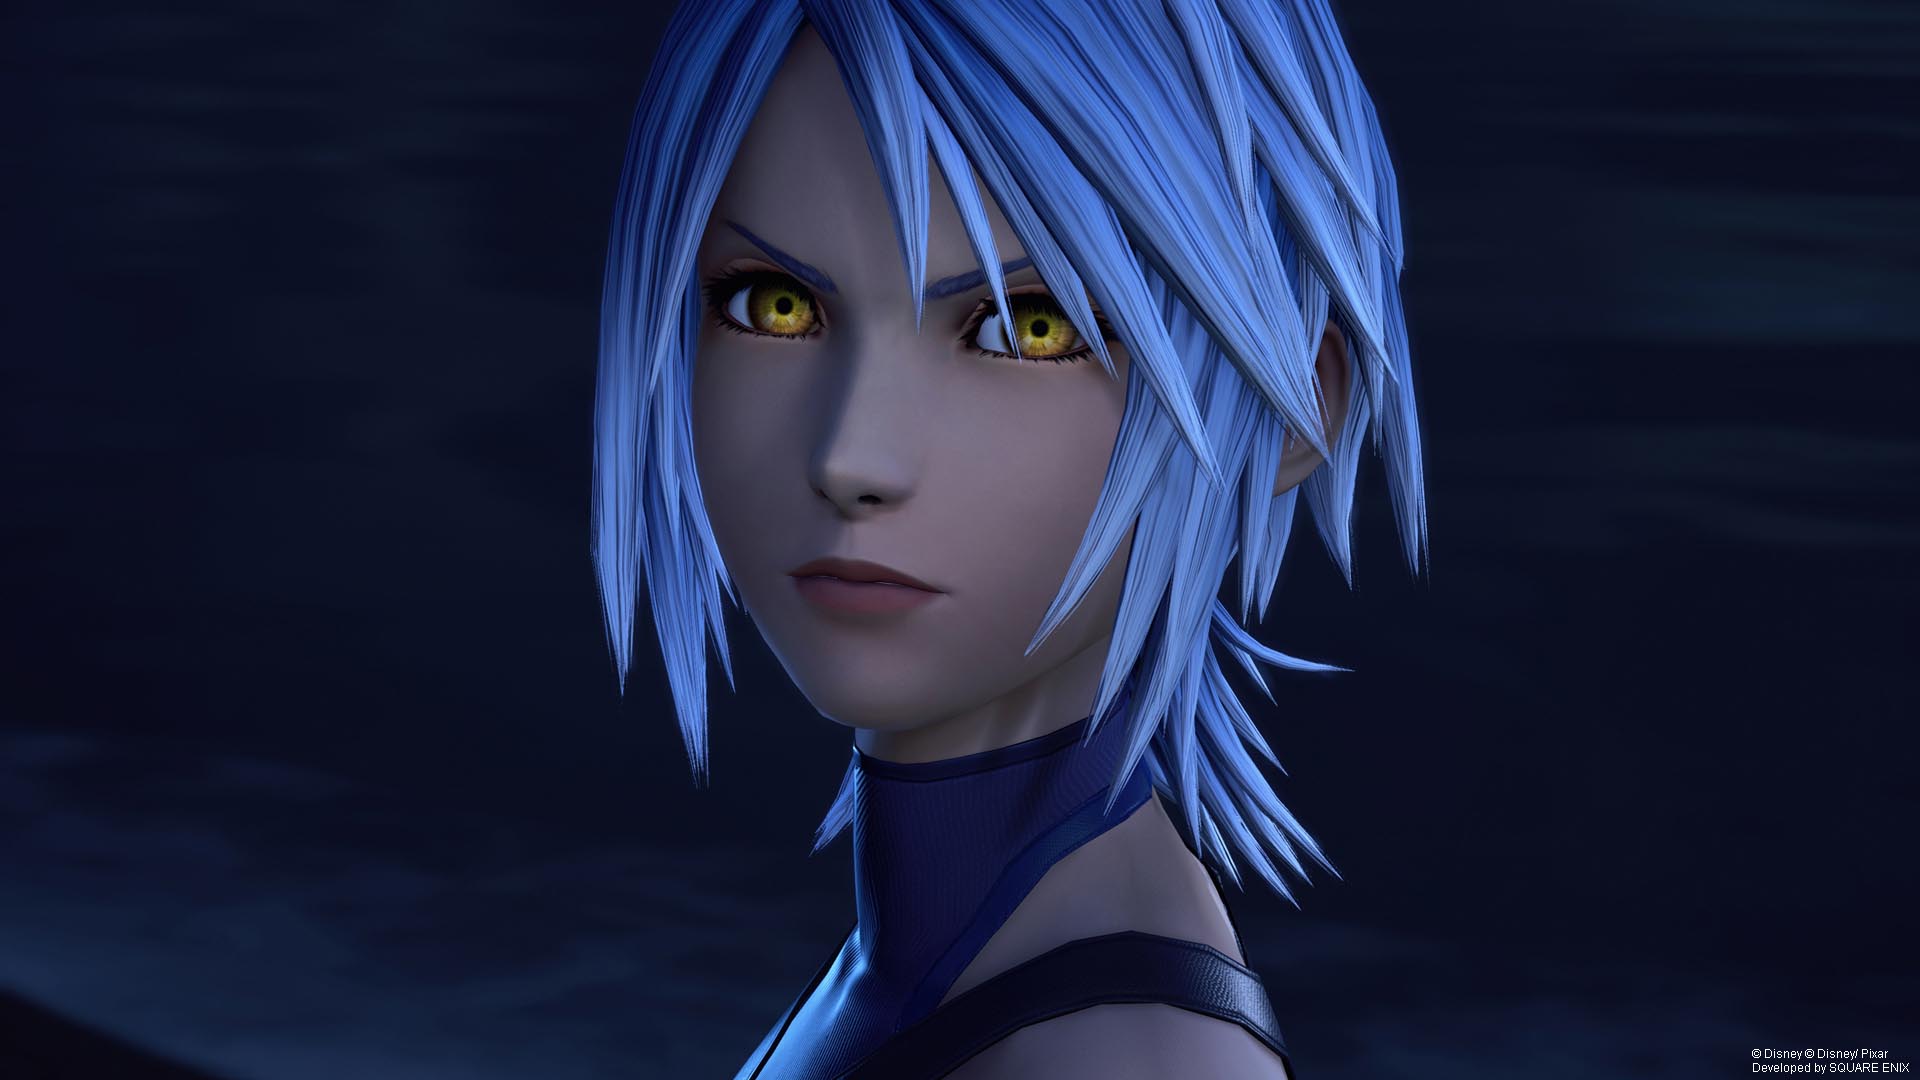 Square Enix publicará 5 vídeos para resumir la historia y sucesos previos a Kingdom Hearts III